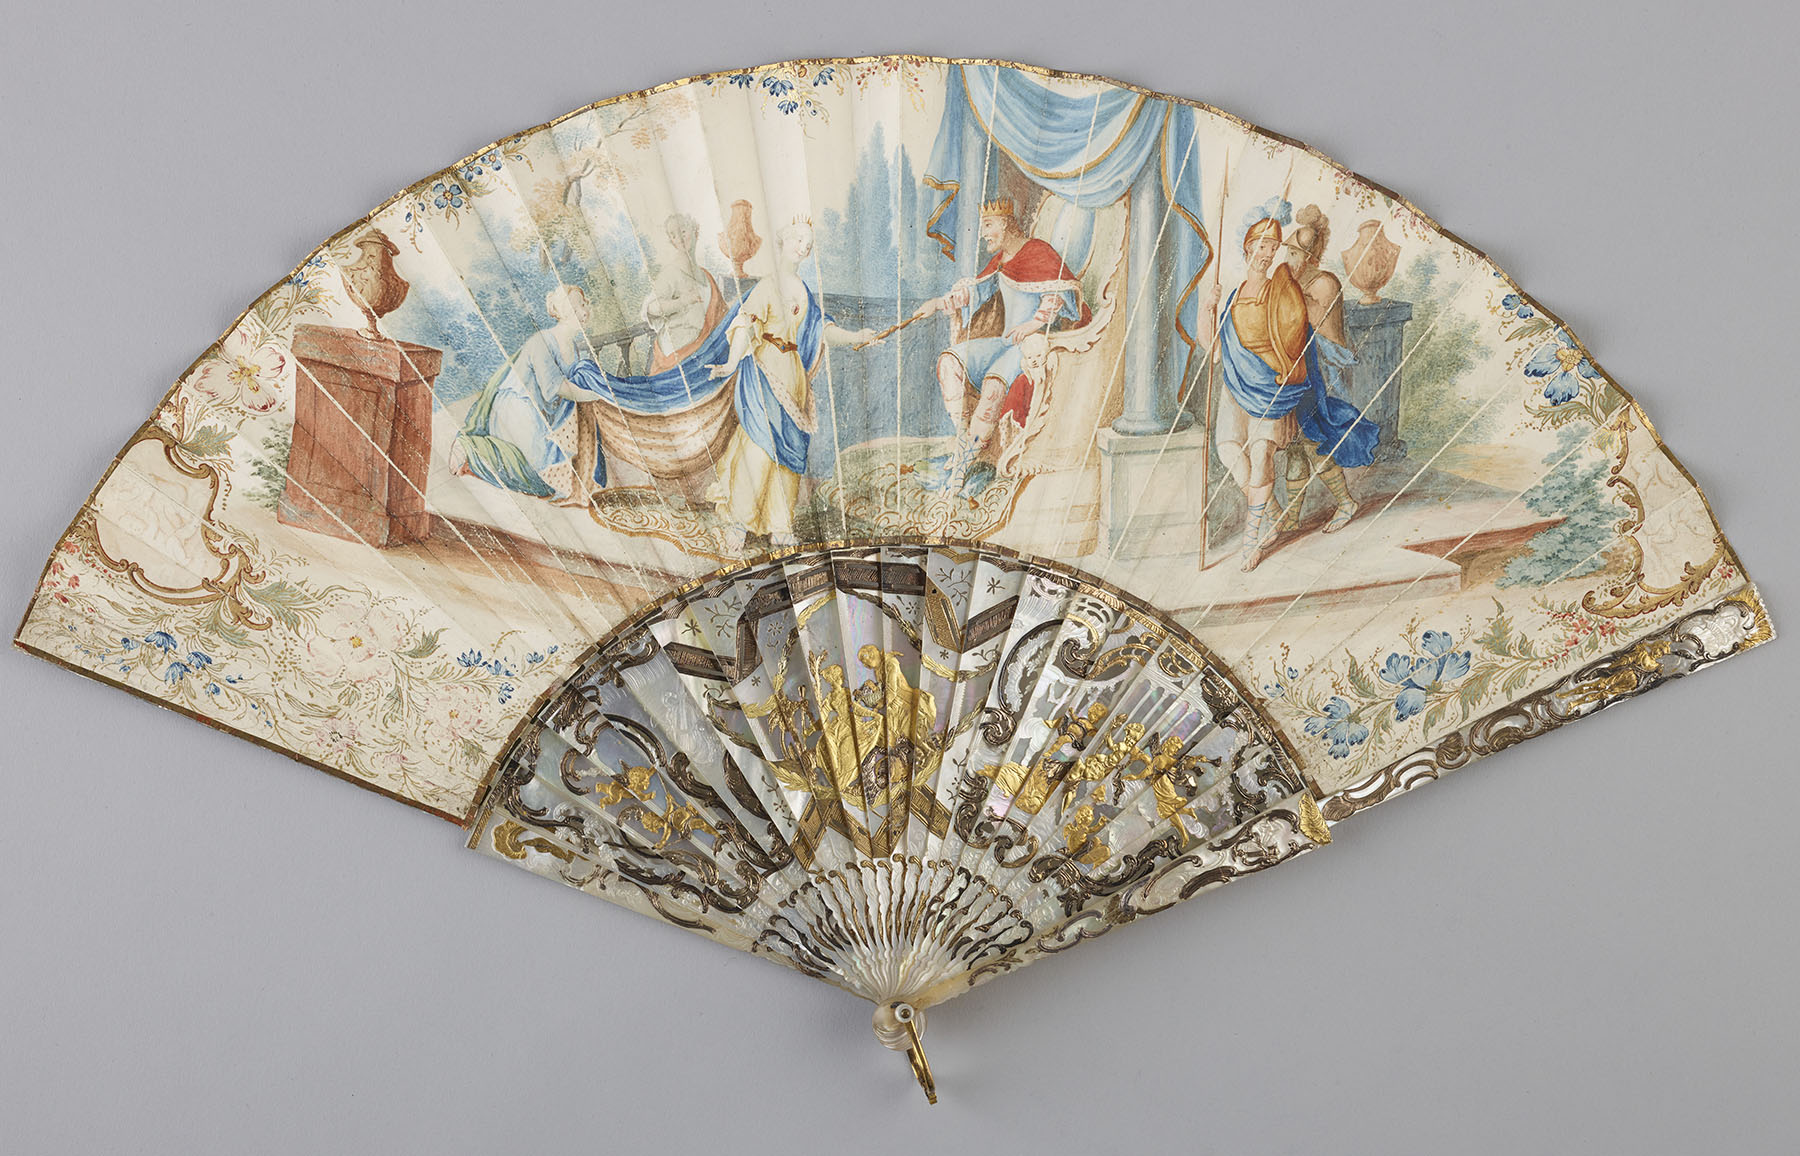 Ornate folding fan